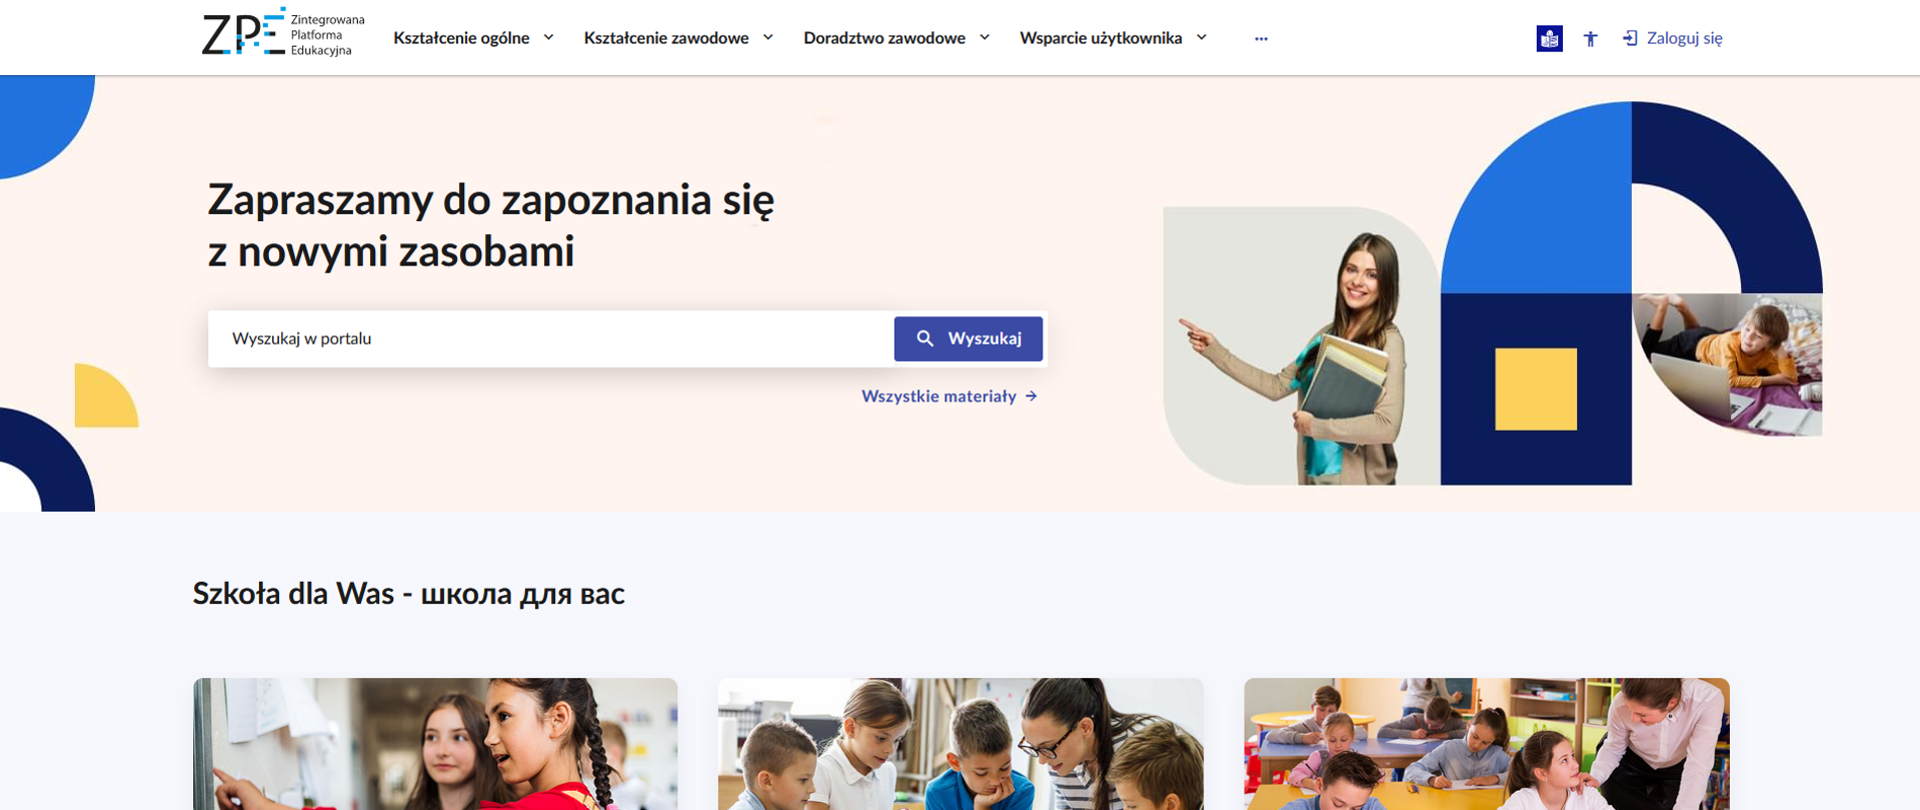 Zdjęcie strony internetowej - portalu Zintegrowana Platforma Edukacyjna